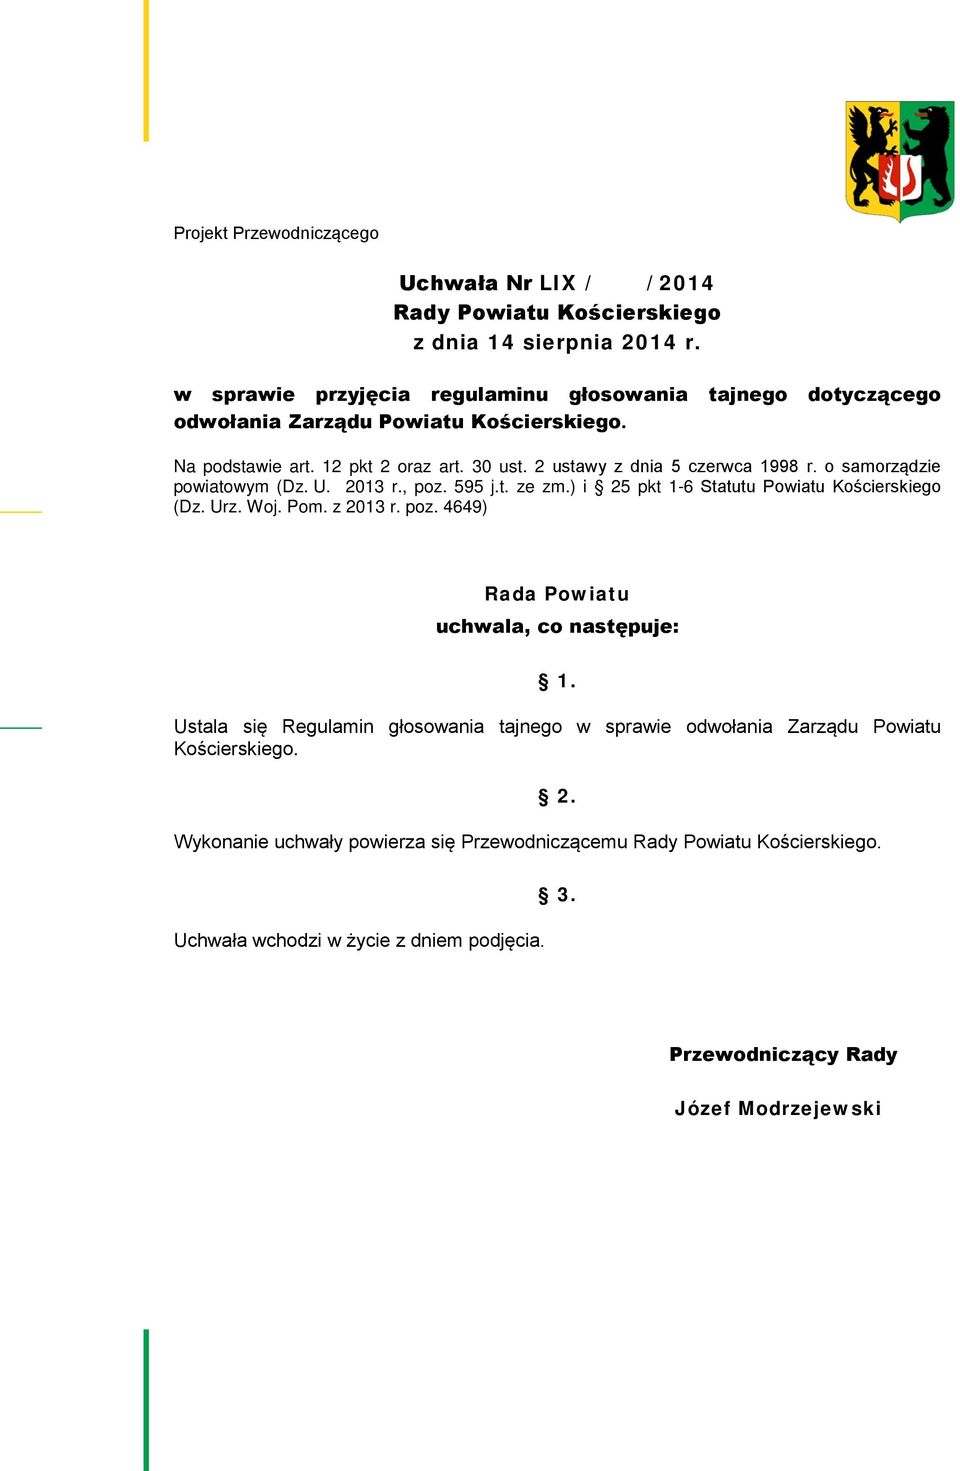 o samorządzie powiatowym (Dz. U. 2013 r., poz. 595 j.t. ze zm.) i 25 pkt 1-6 Statutu Powiatu Kościerskiego (Dz. Urz. Woj. Pom. z 2013 r. poz. 4649) Rada Powiatu uchwala, co następuje: 1.